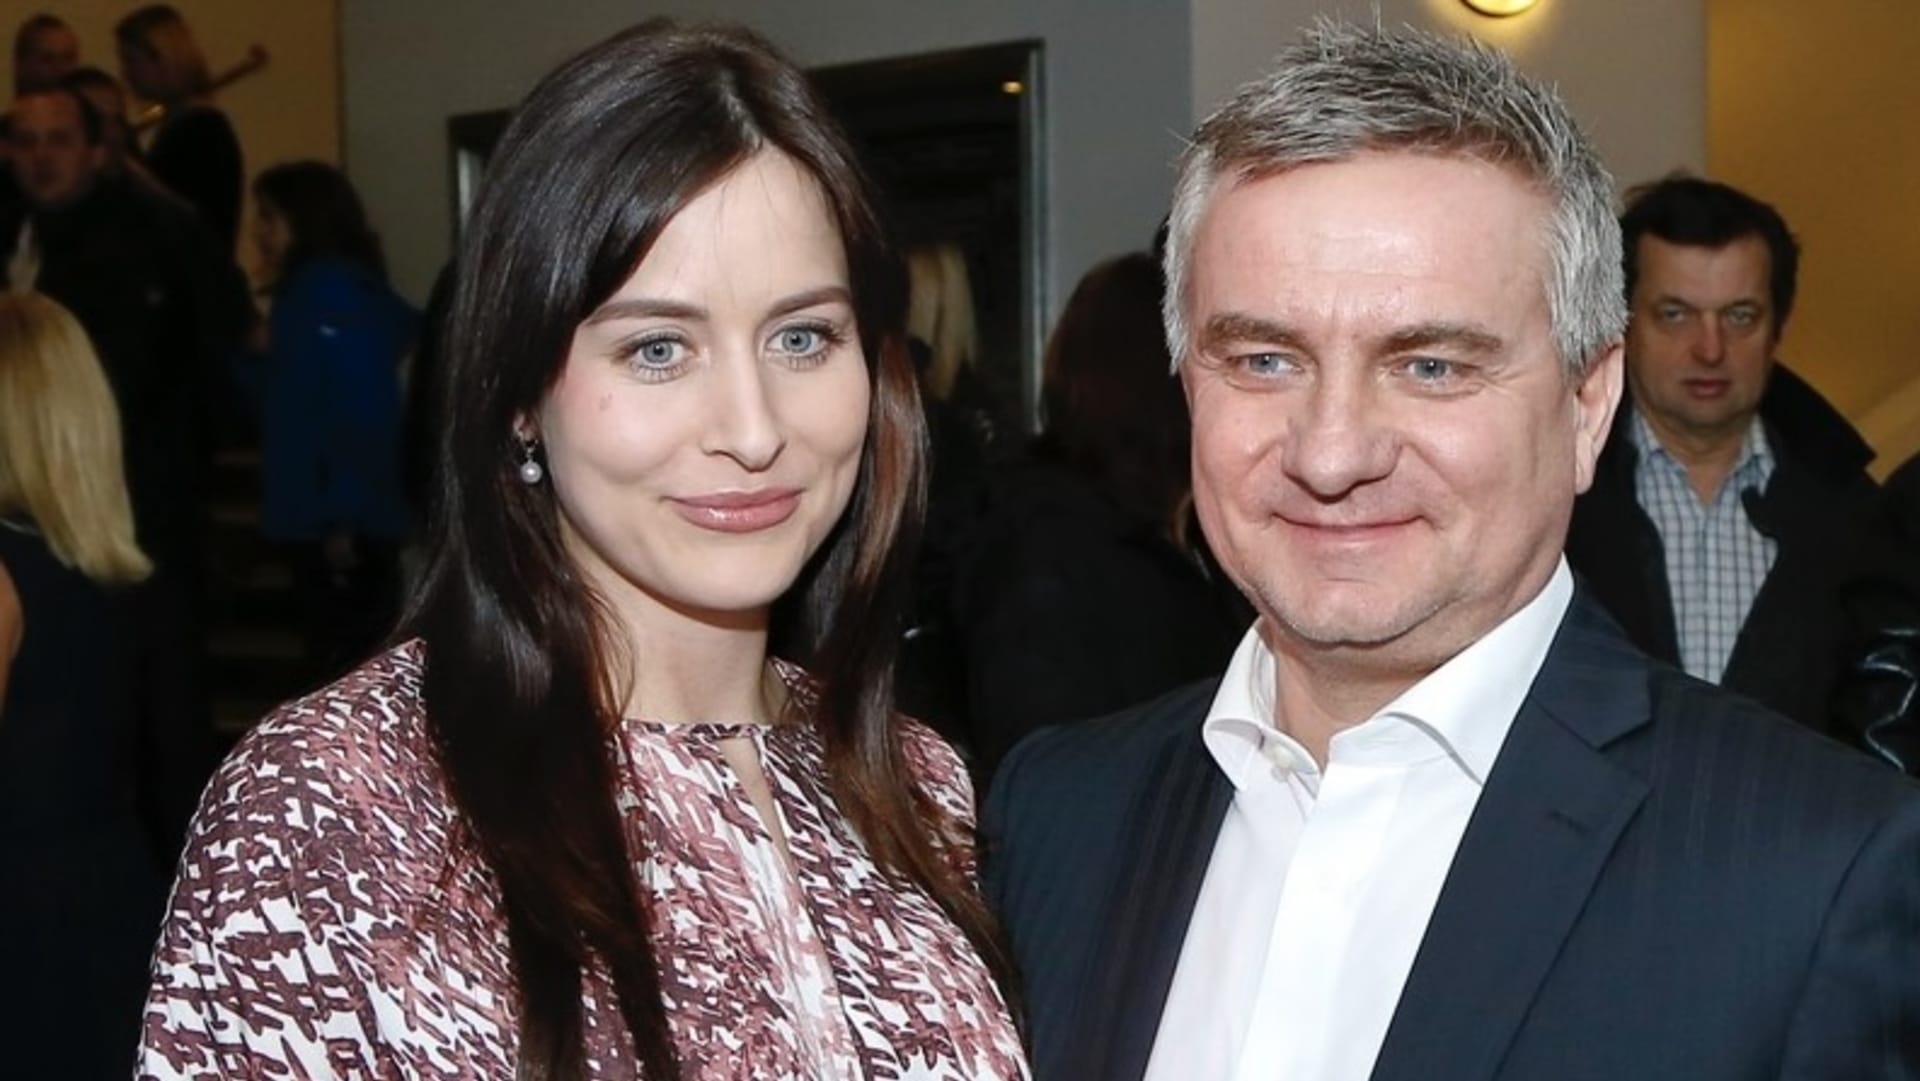 Alex Mynářová přiznala, že byla terčem kritiky kvůli manželovi